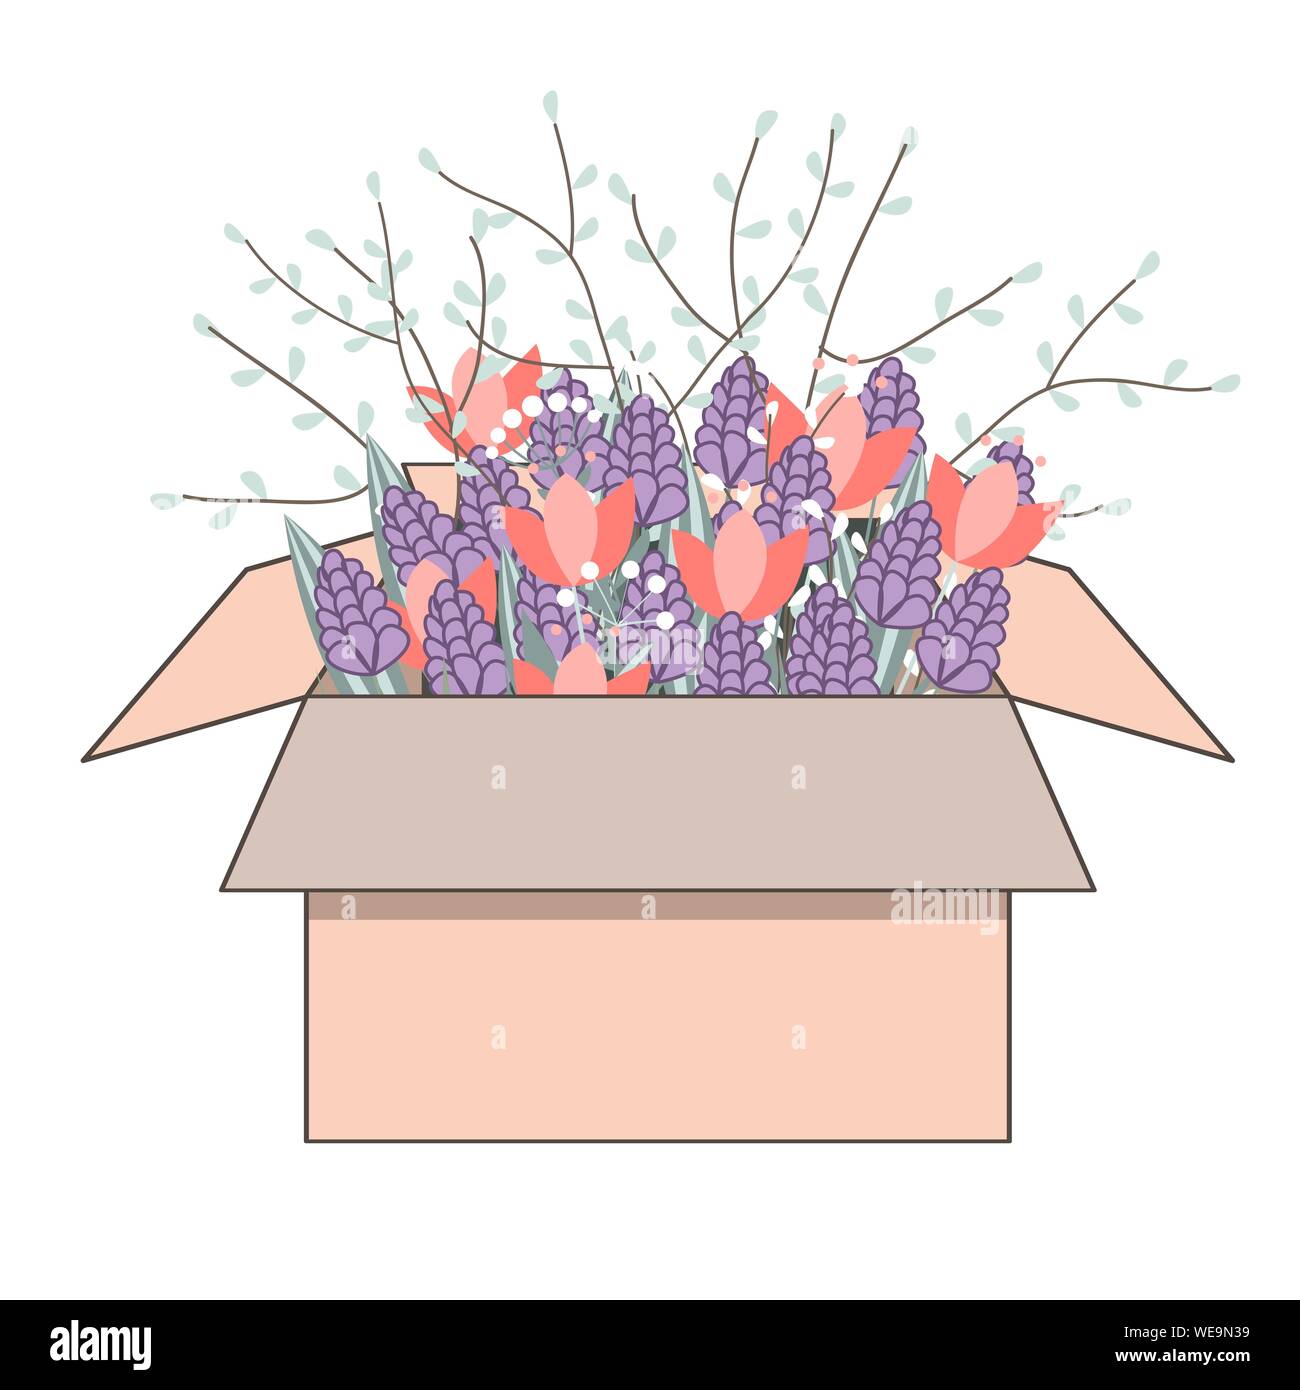 Tulpen Blumen im Karton. Blumenstrauß aus der Feder doodle Hyazinthen und Tulpen, Vektor illustartion Stock Vektor